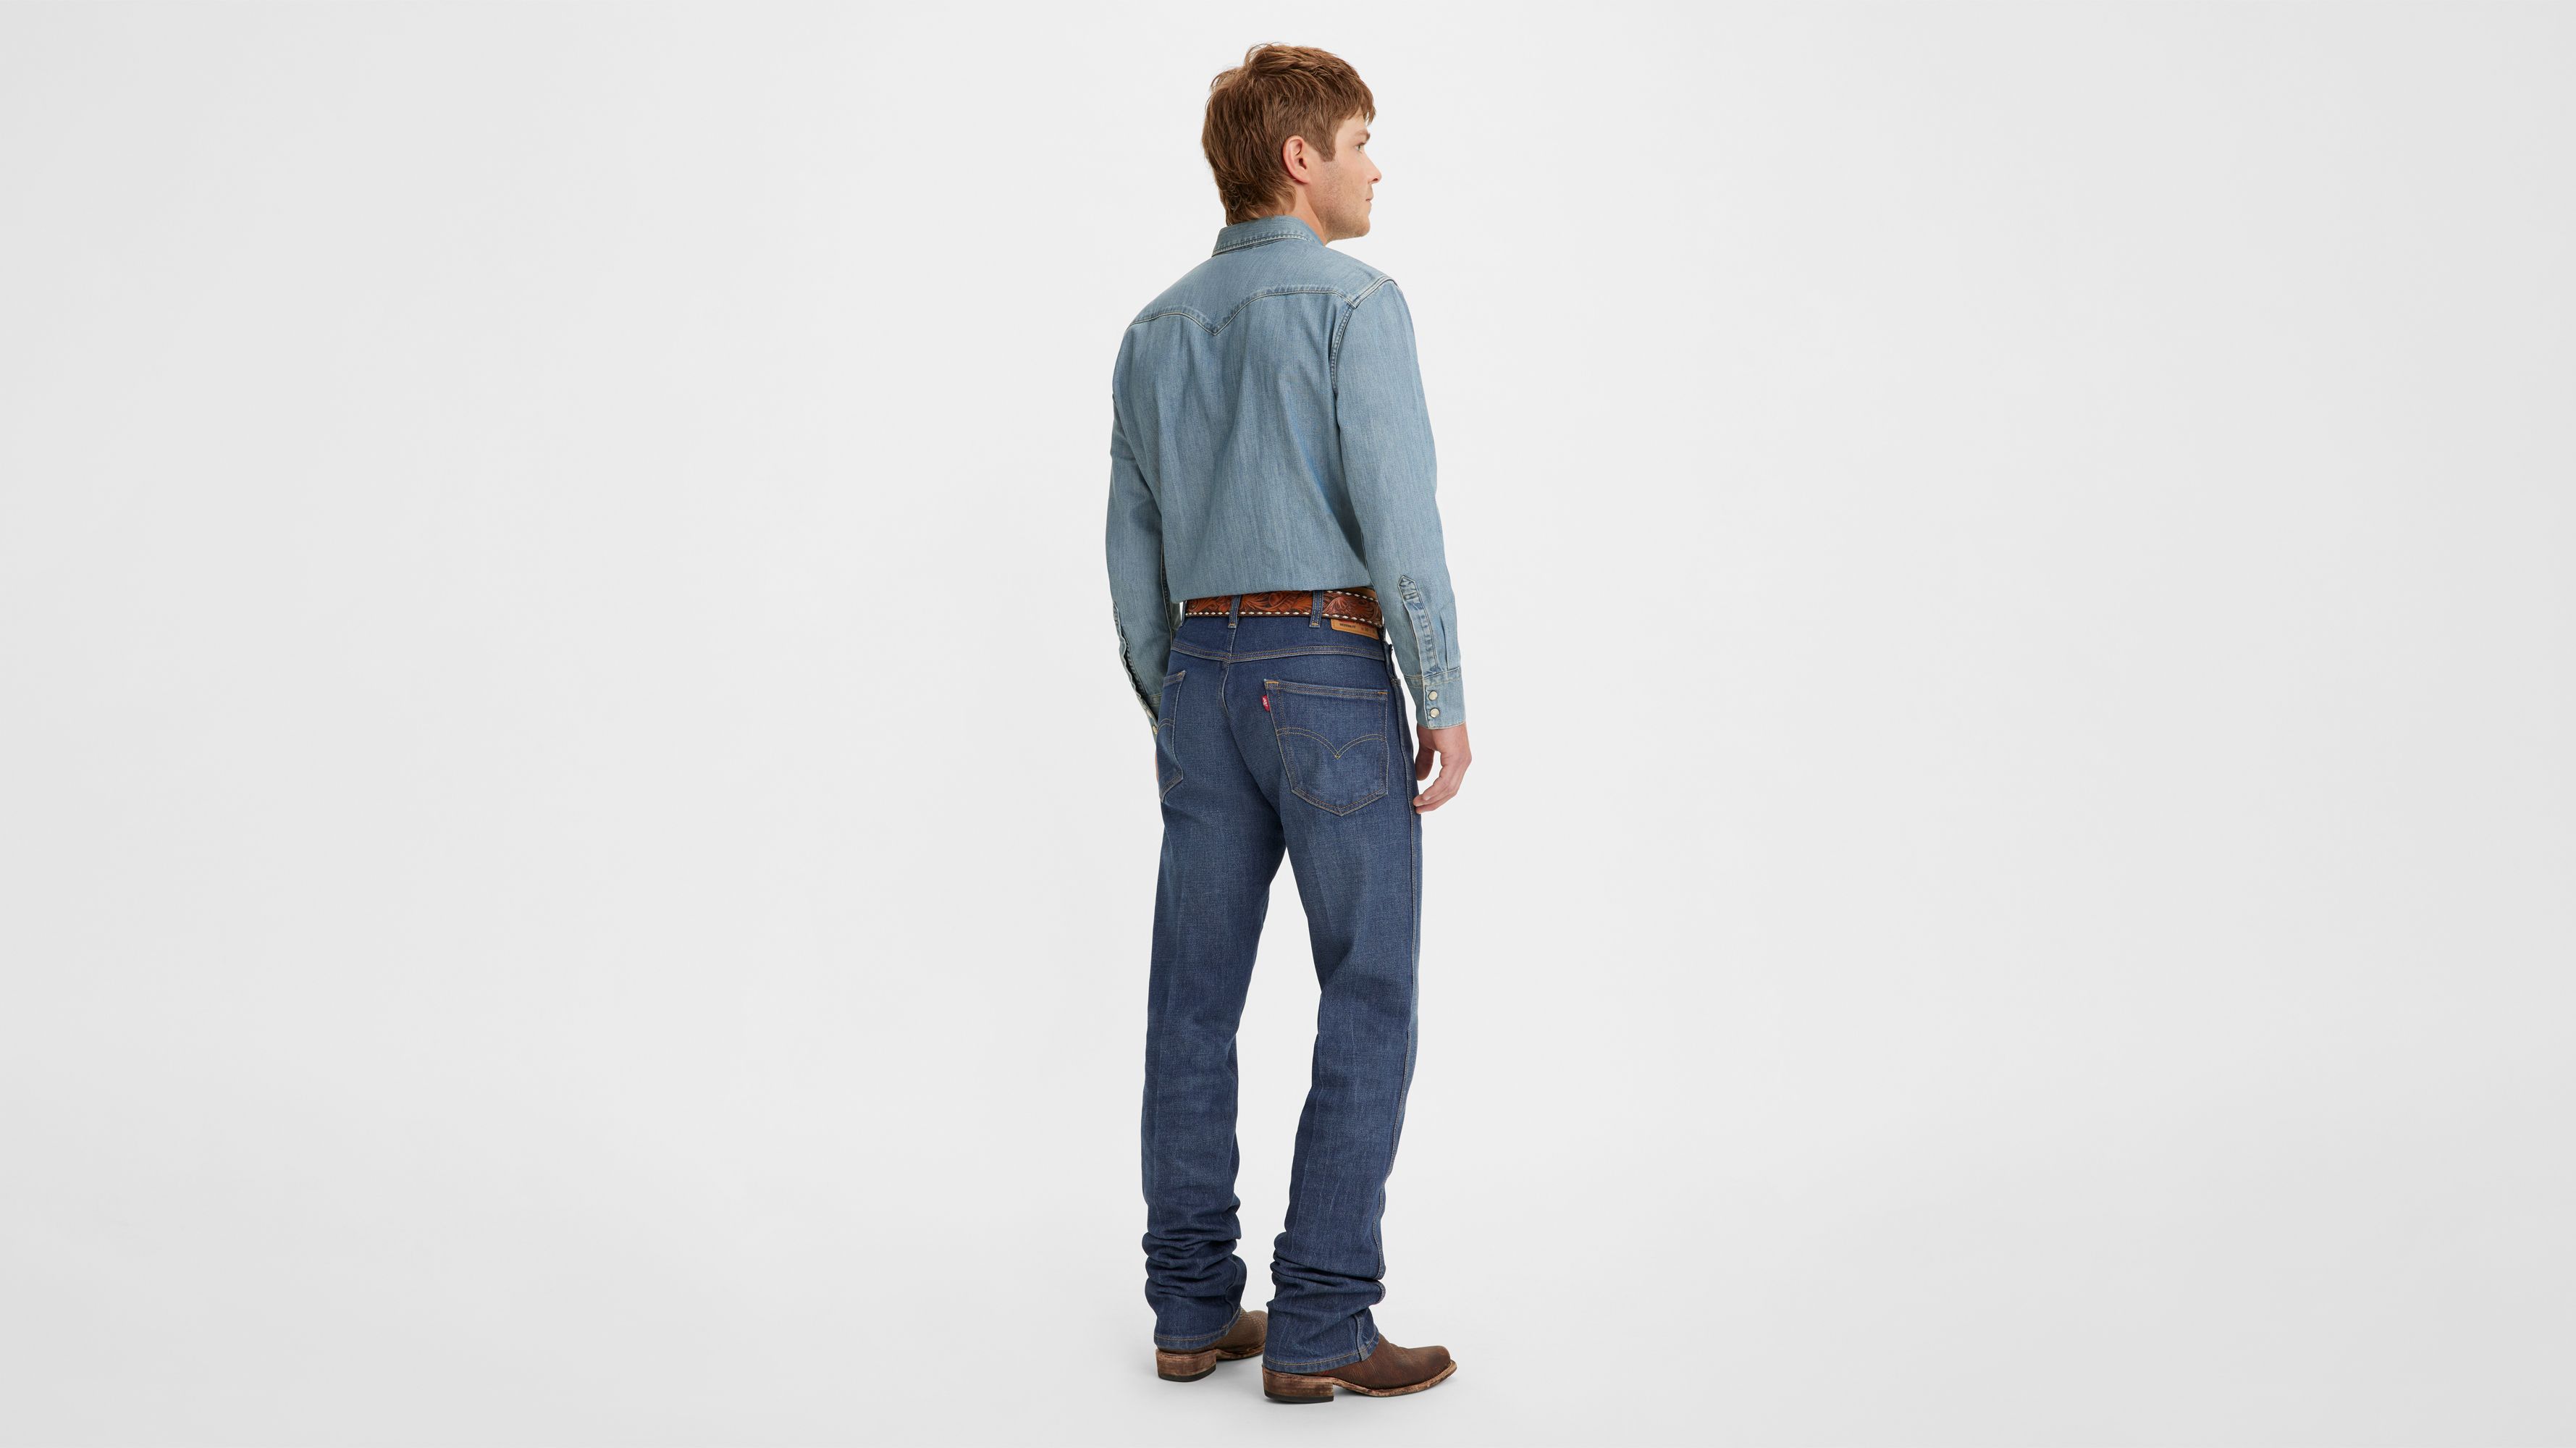 Western Fit Men's Jeans (big & Tall) - Dark Wash | Levi's® US